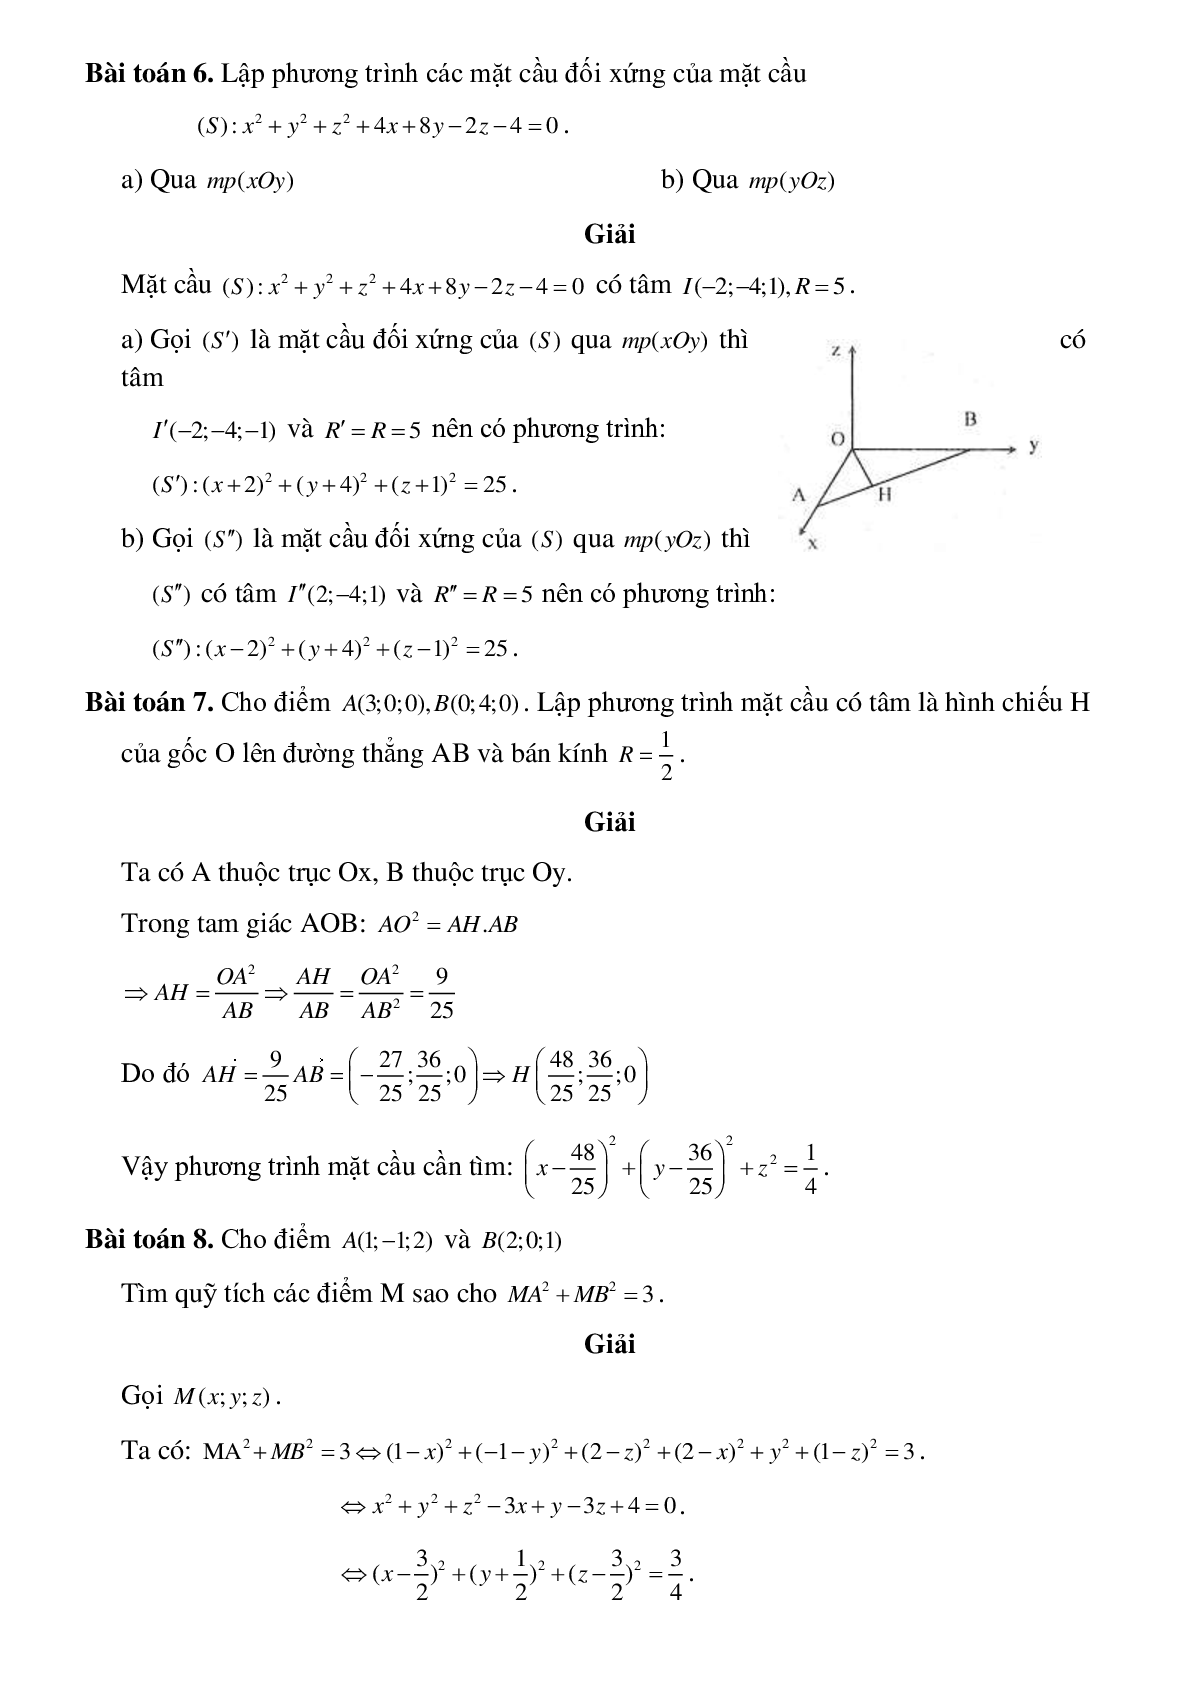 Lập phương trình mặt cầu (trang 4)